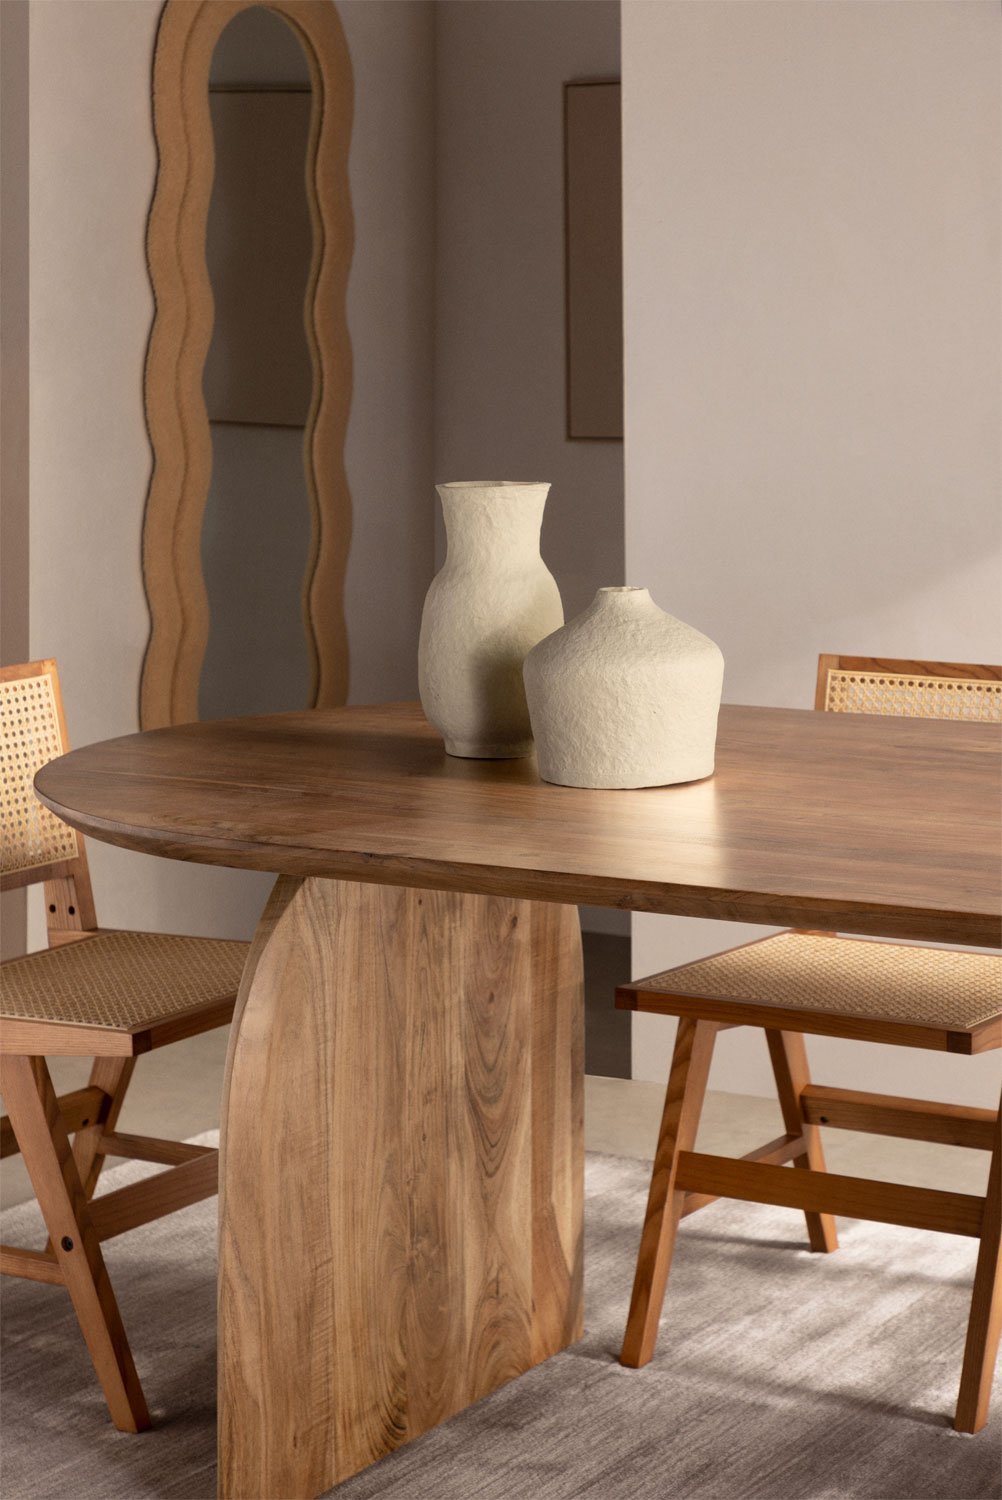 Table à manger ovale en bois d'acacia (200x100 cm) Bedum, image de la galerie 1